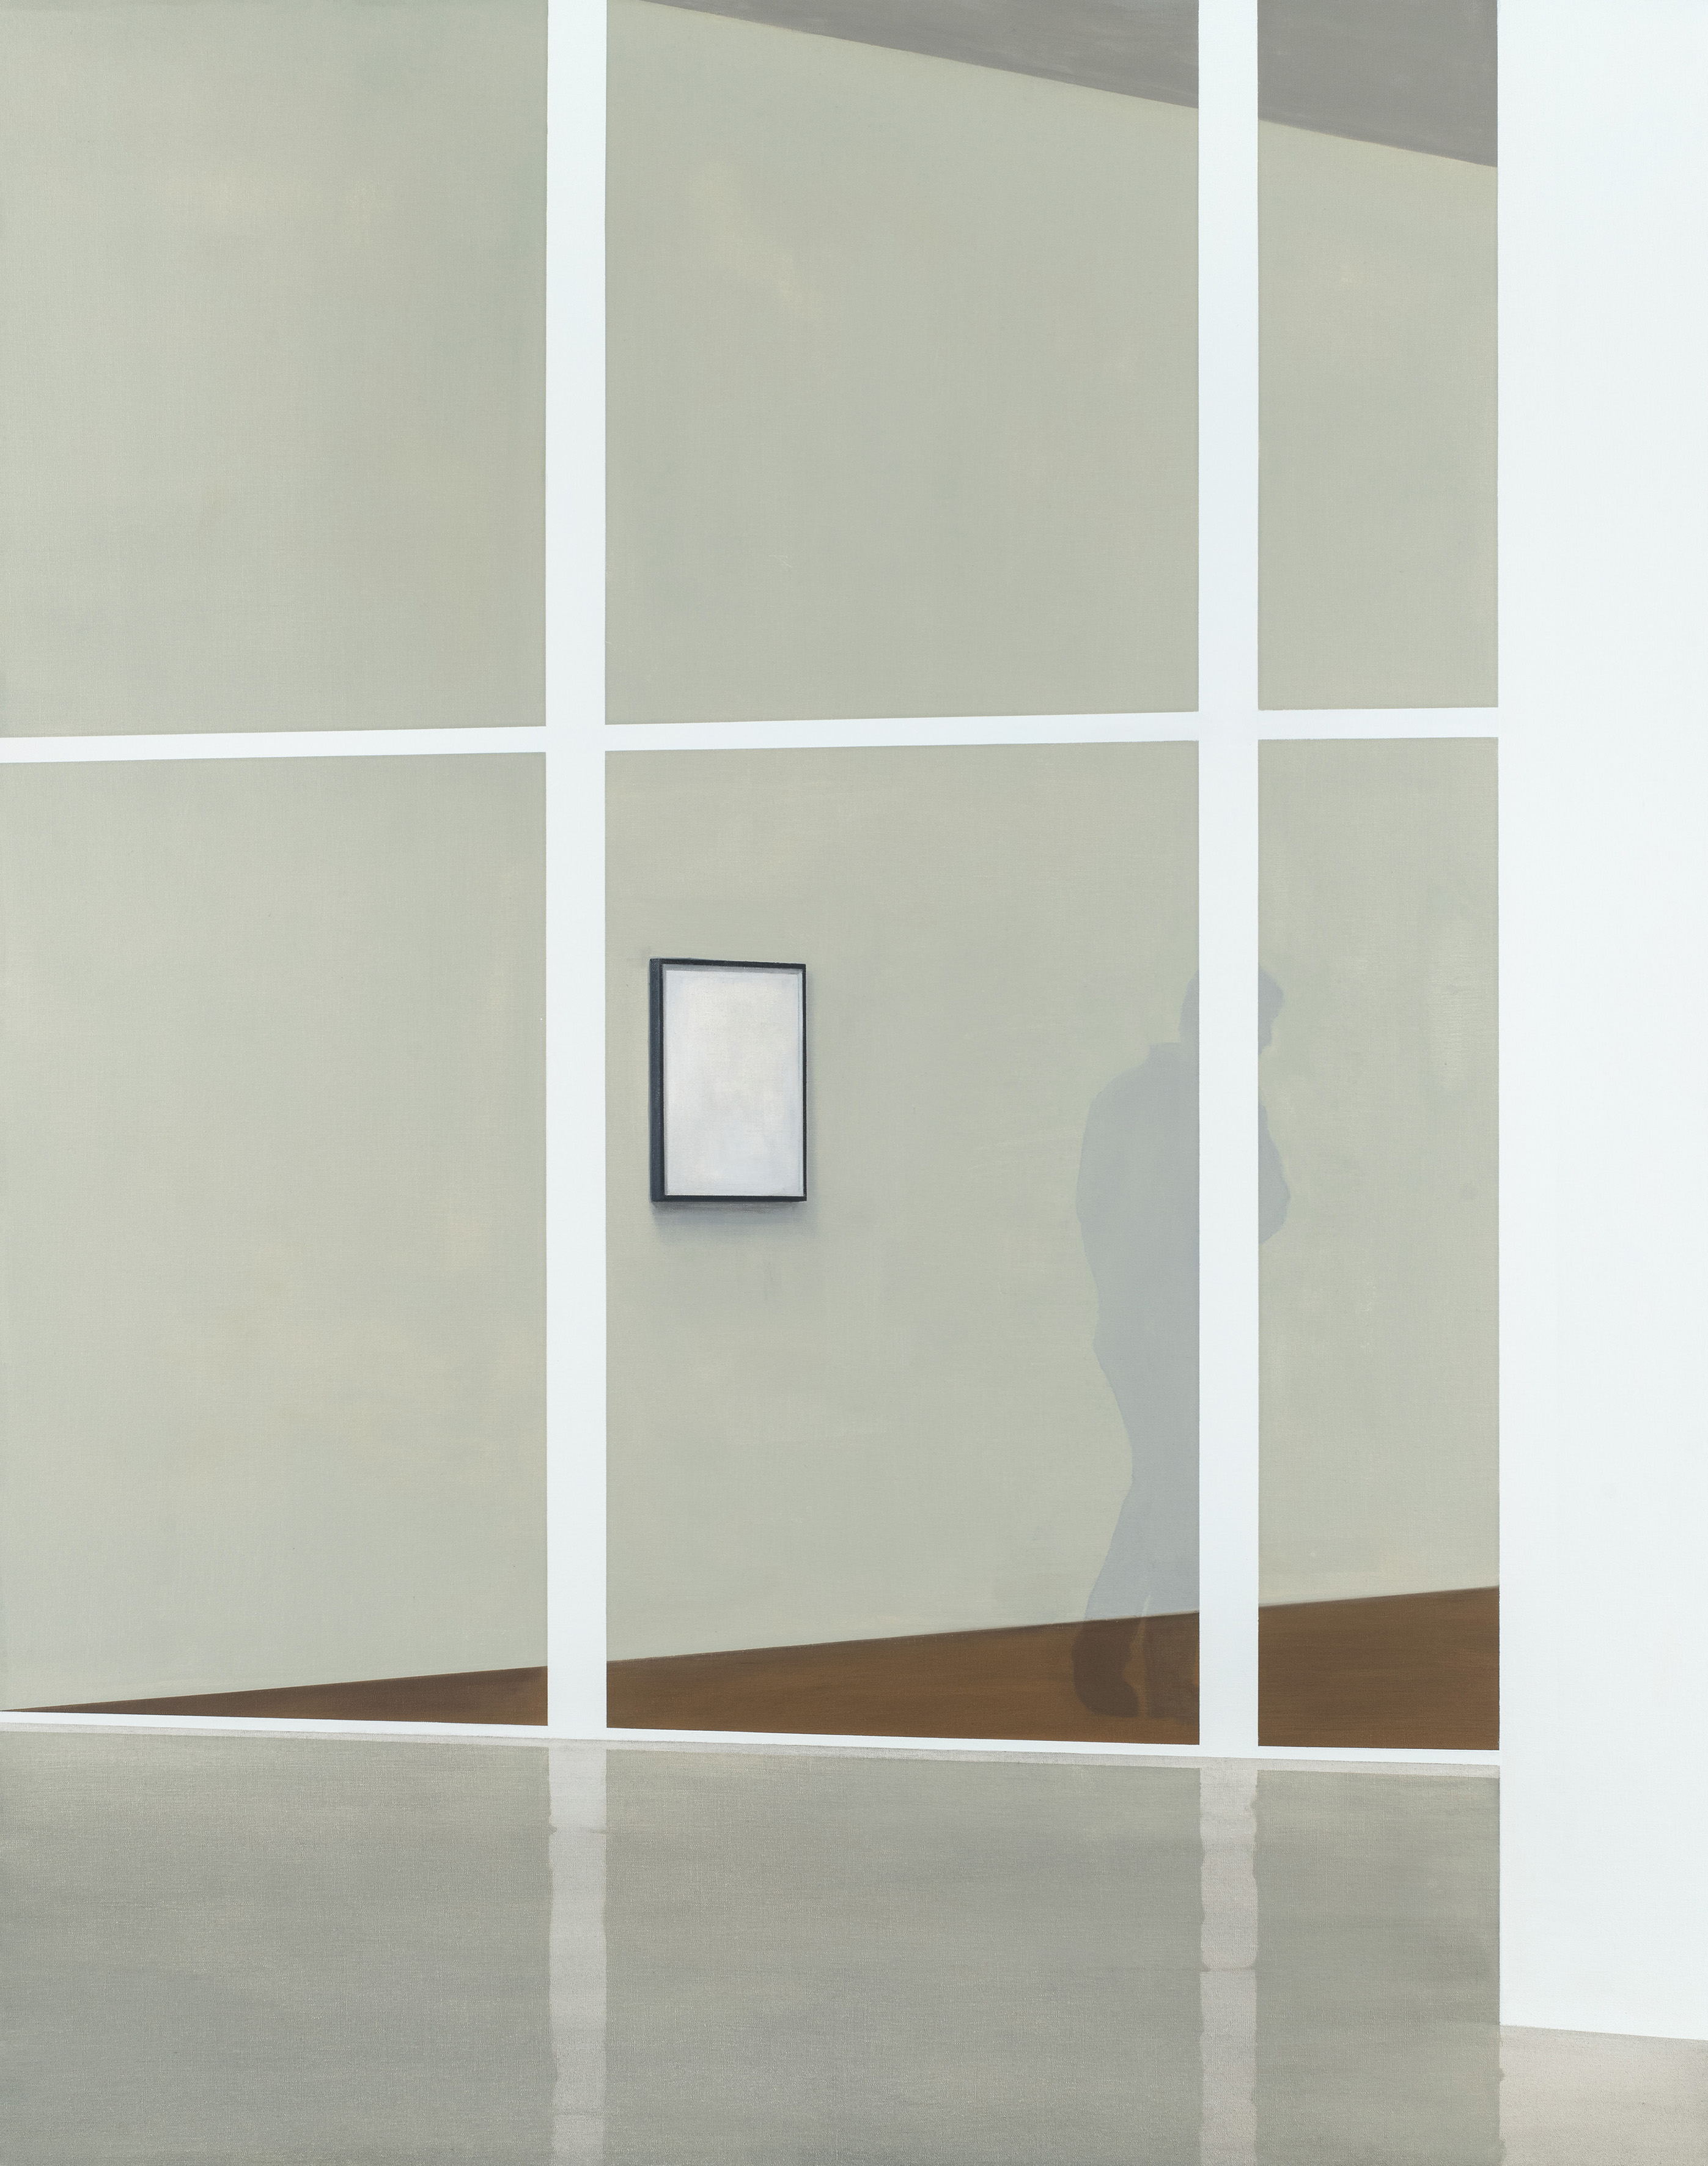 Tim Eitel
Interior (Ghost), 2020
Öl auf Leinwand
courtesy Galerie EIGEN + ART
Leipzig/Berlin
Foto: Jean-Louis Losi